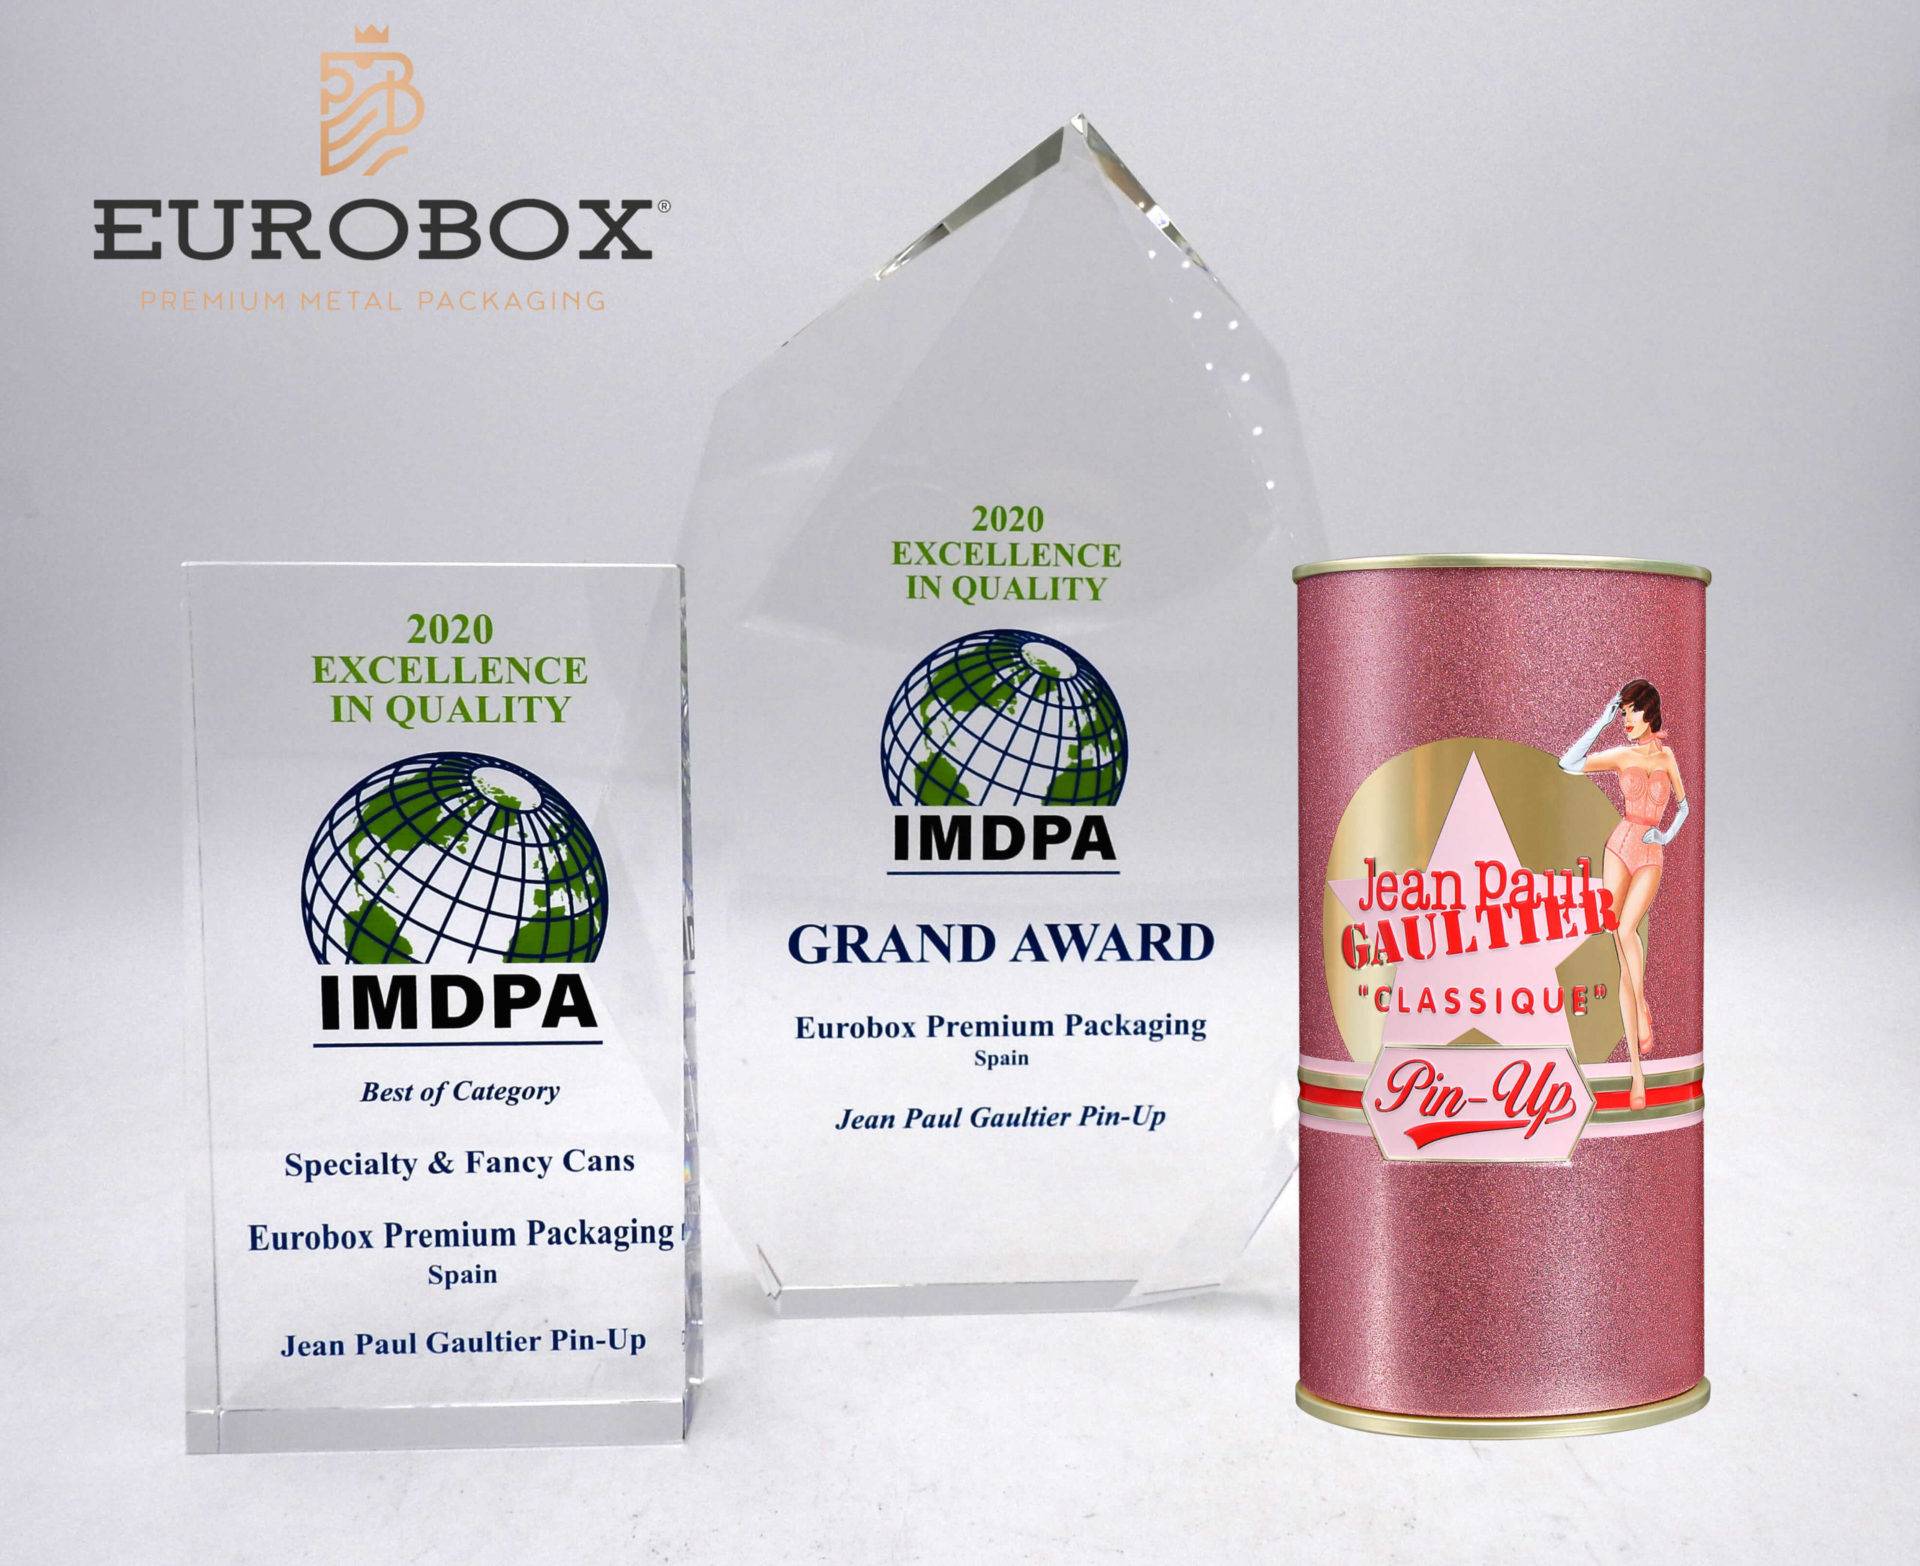 eurobox-remporte-deux-prix-classe-mondiale-IMDPA